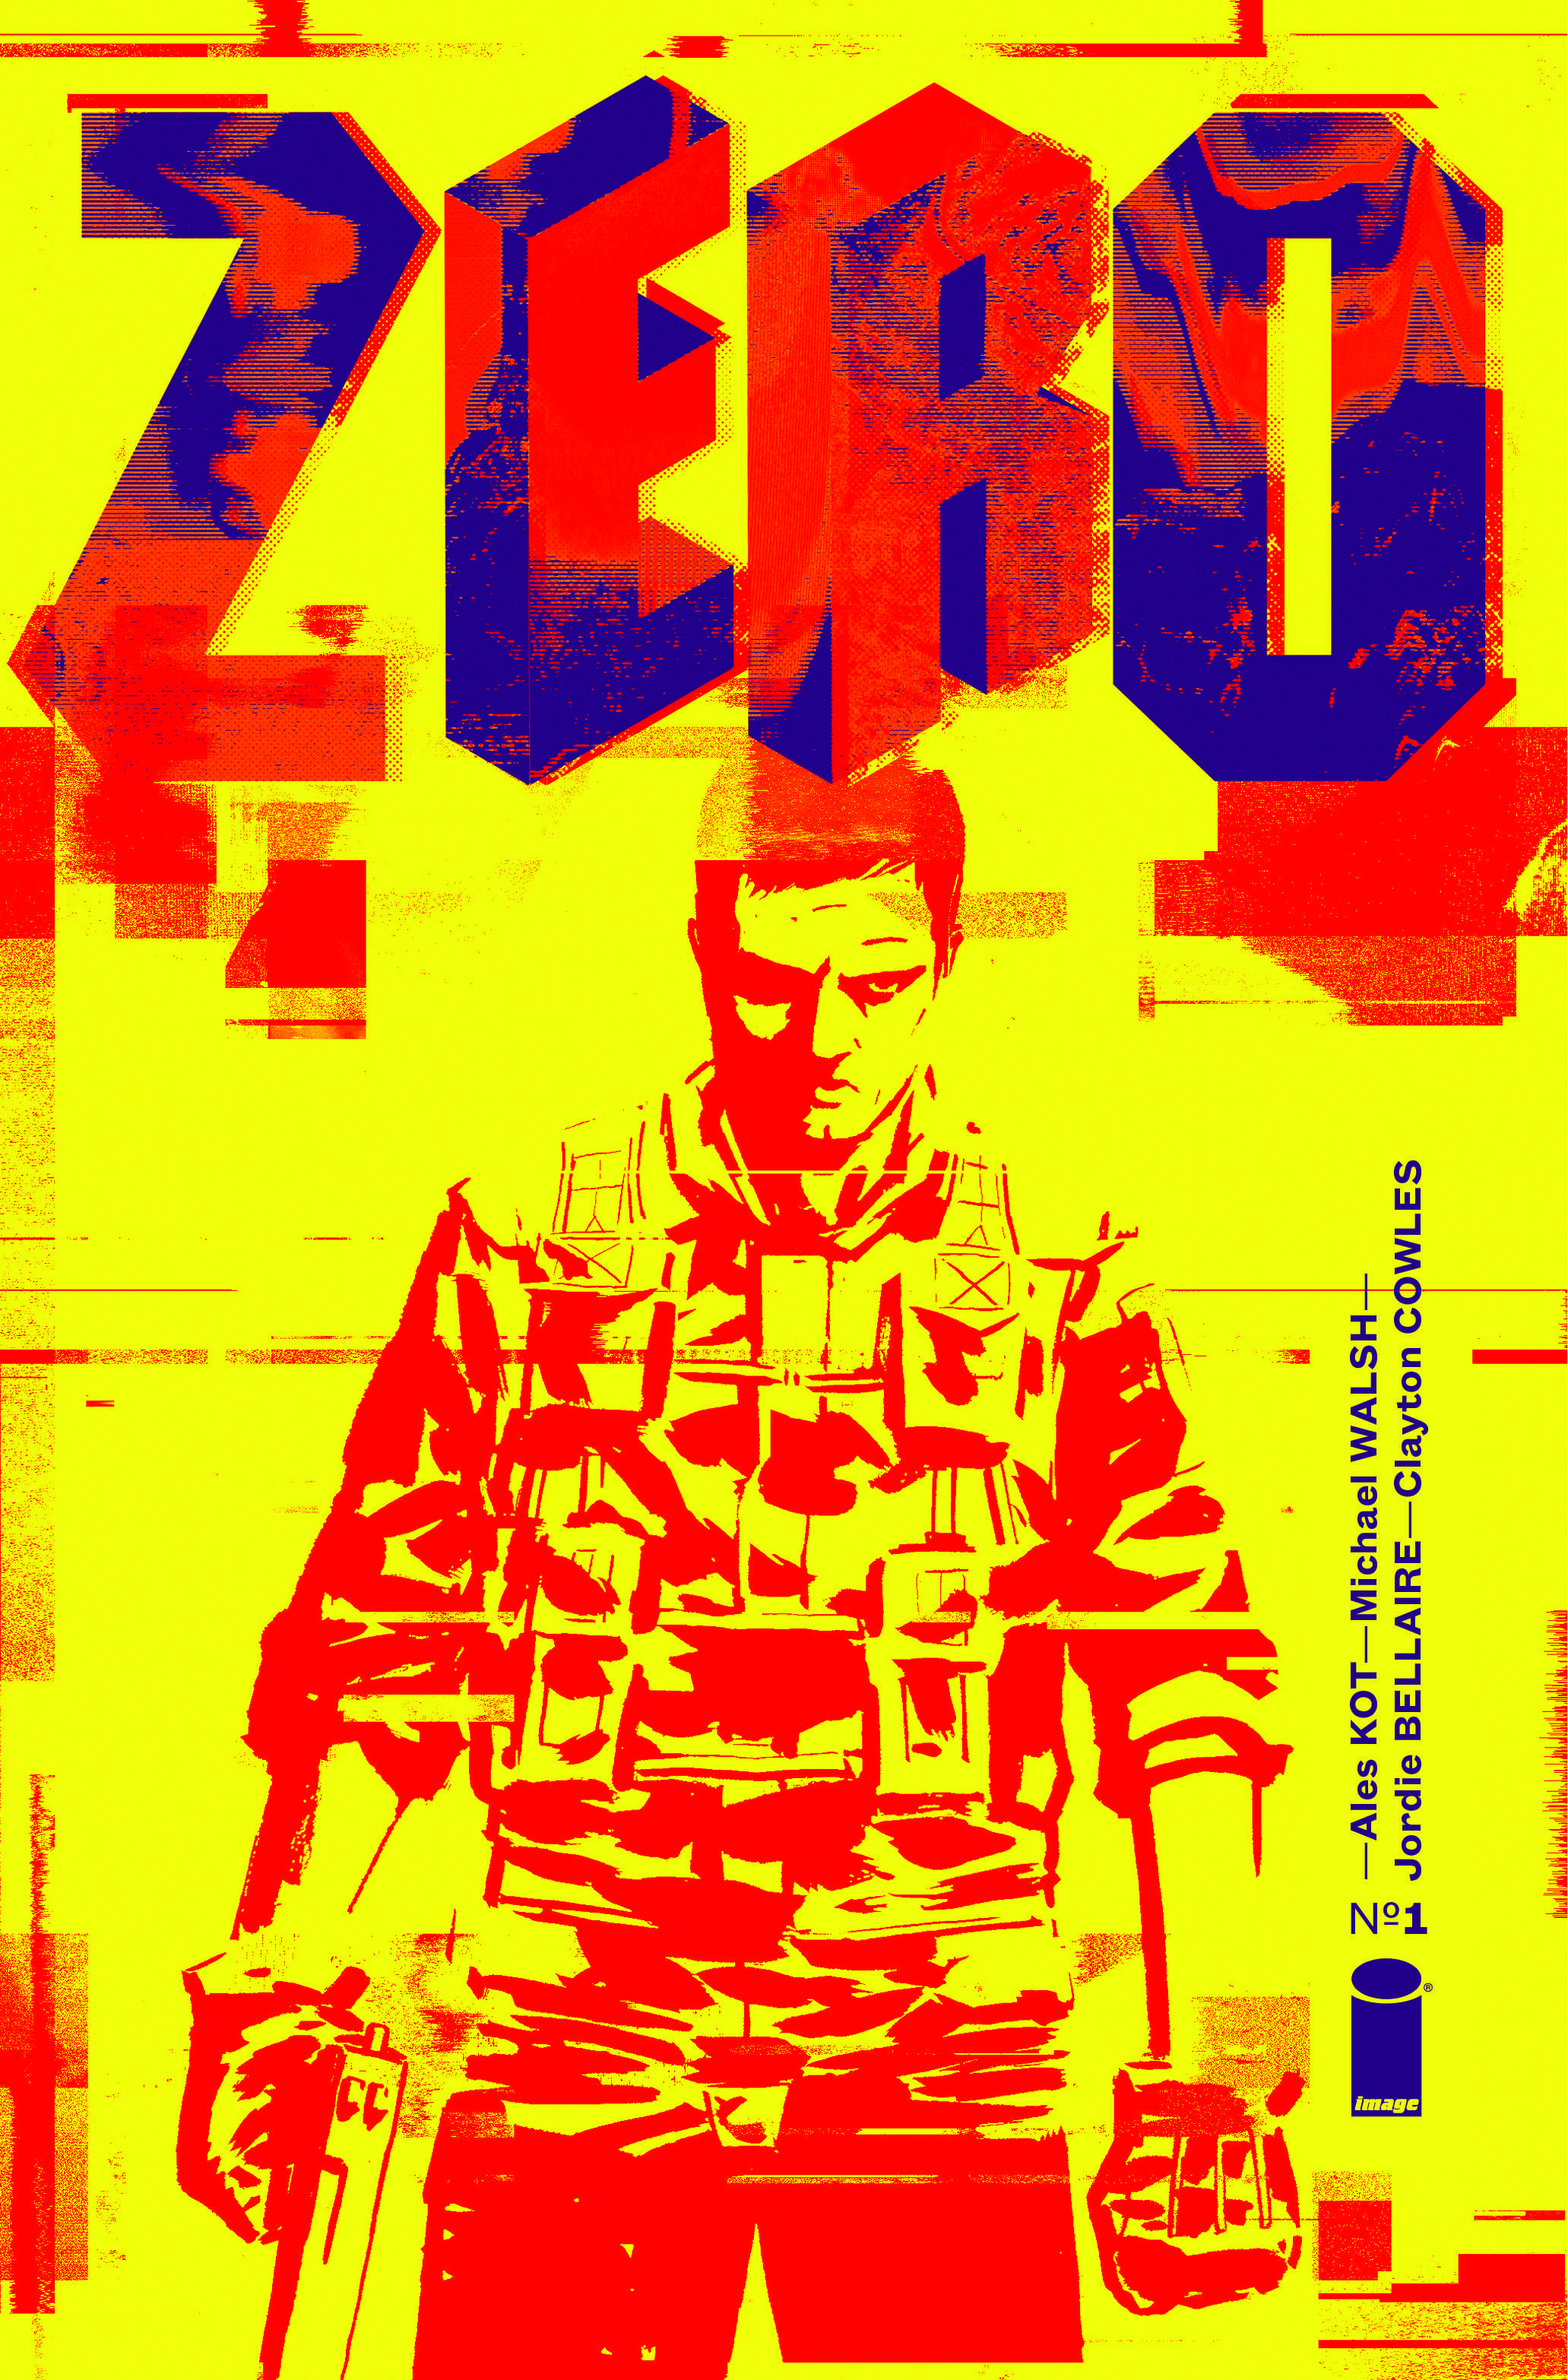 ZERO_01A_COVER